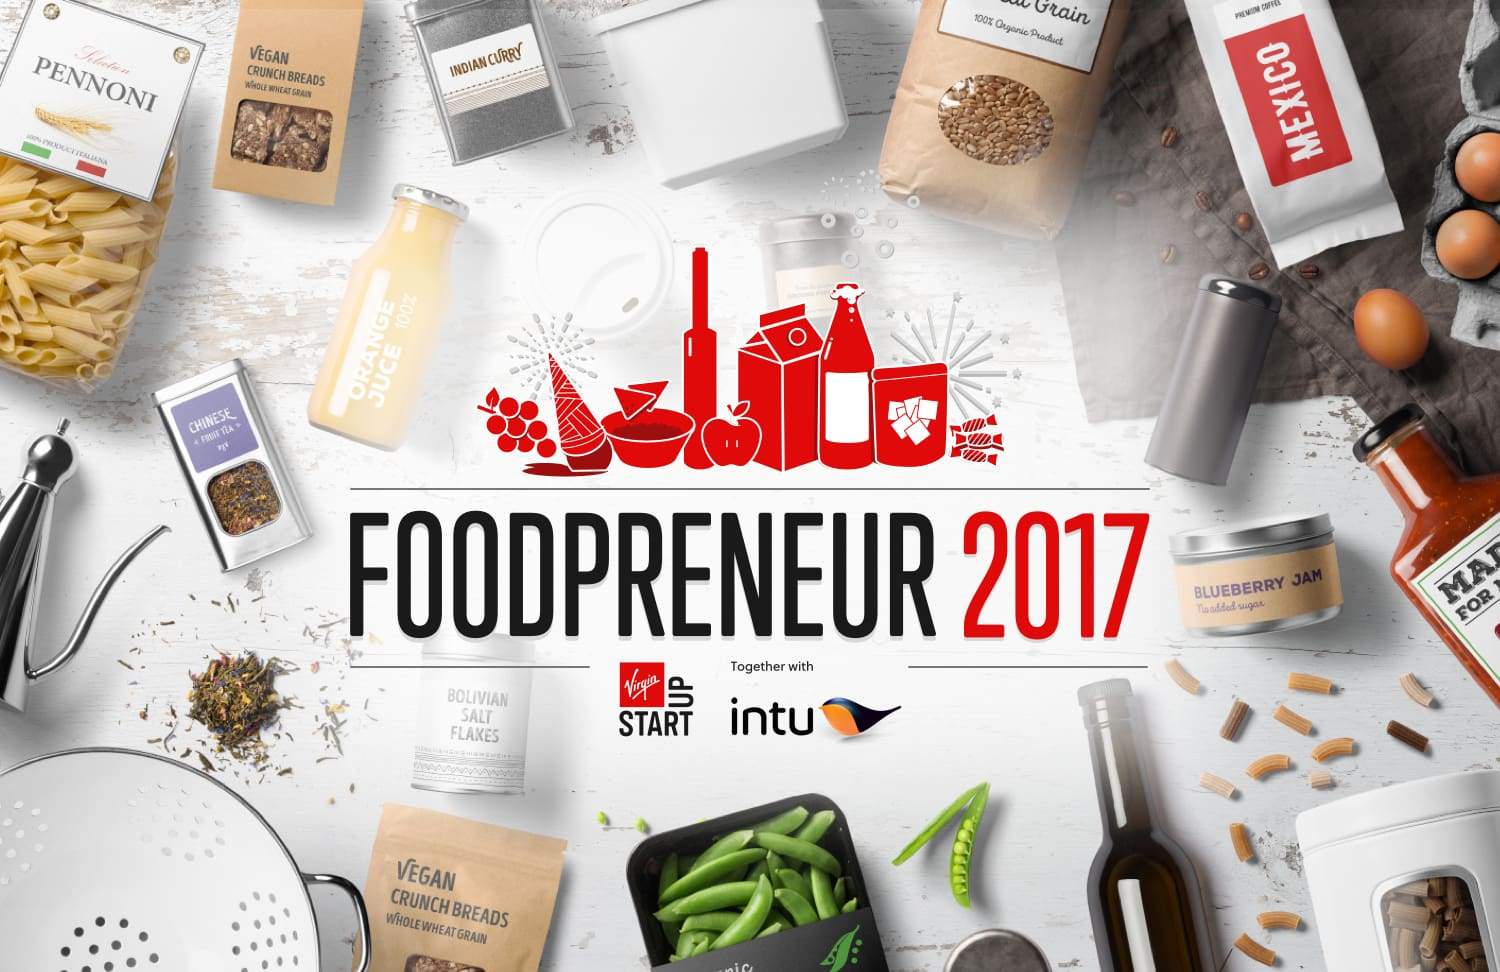 News Release - Virgin Foodprenuer 2017 Finalists!